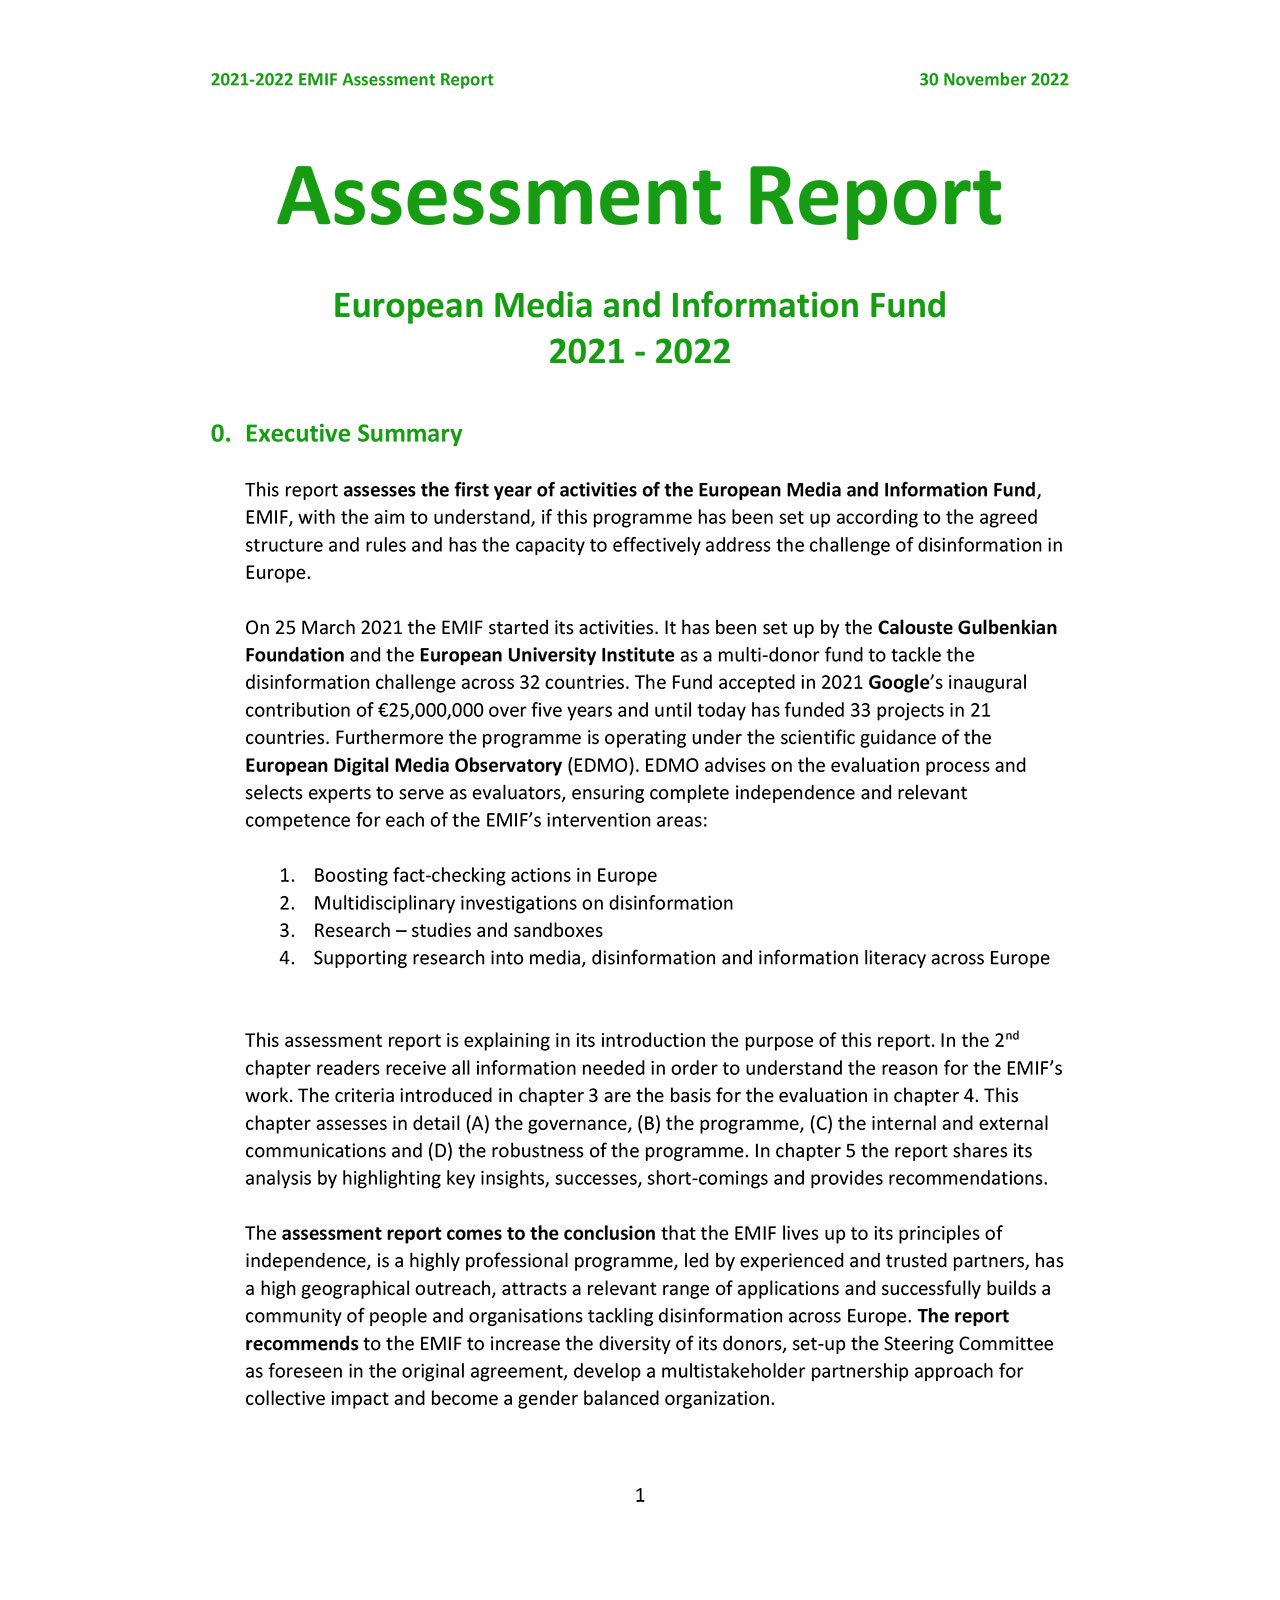 External Assessment Report